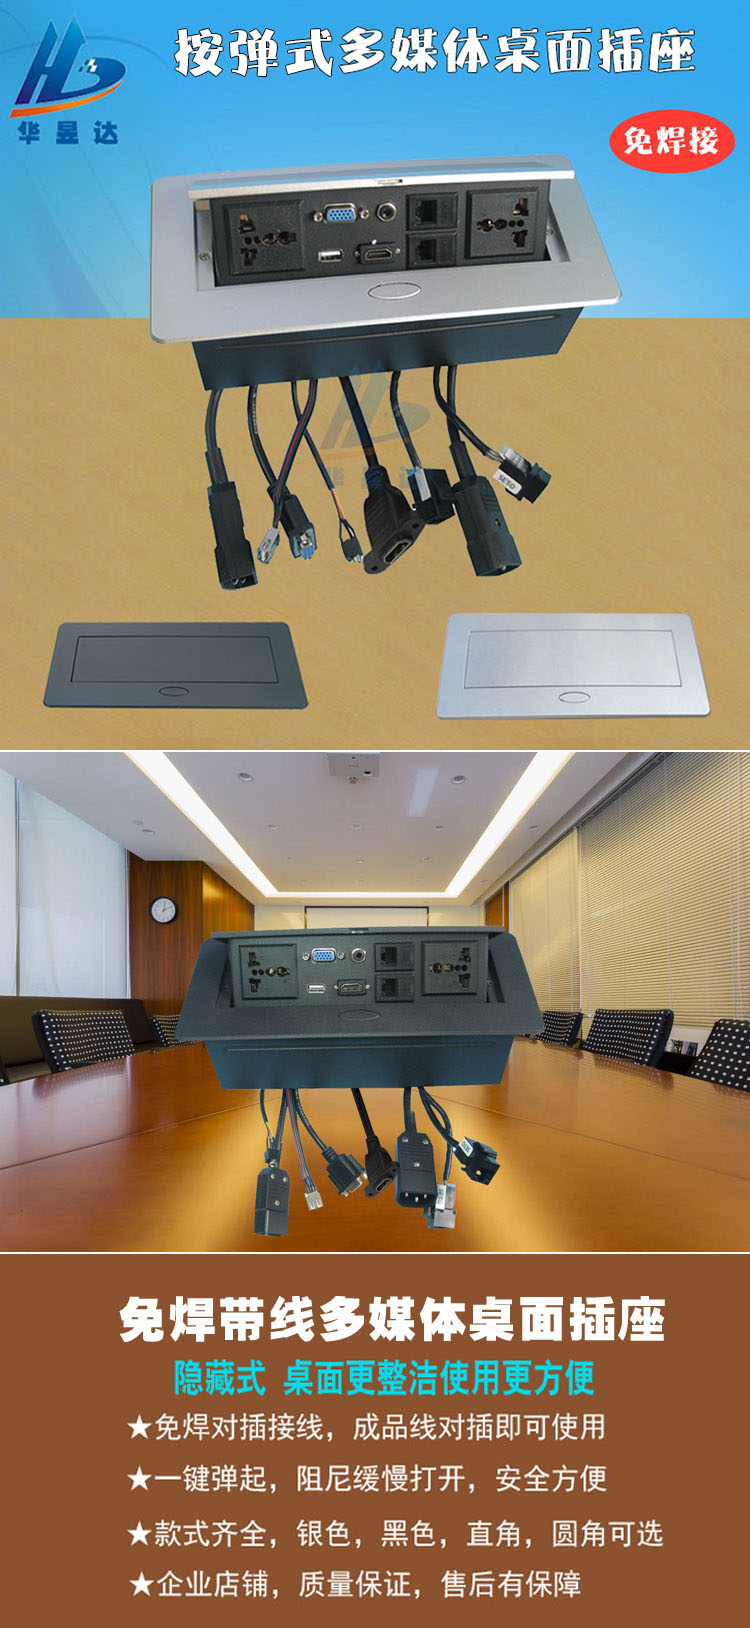 免焊嵌入式多功能桌面插座会议集成多媒体信息盒hdmi接线面板l608直角